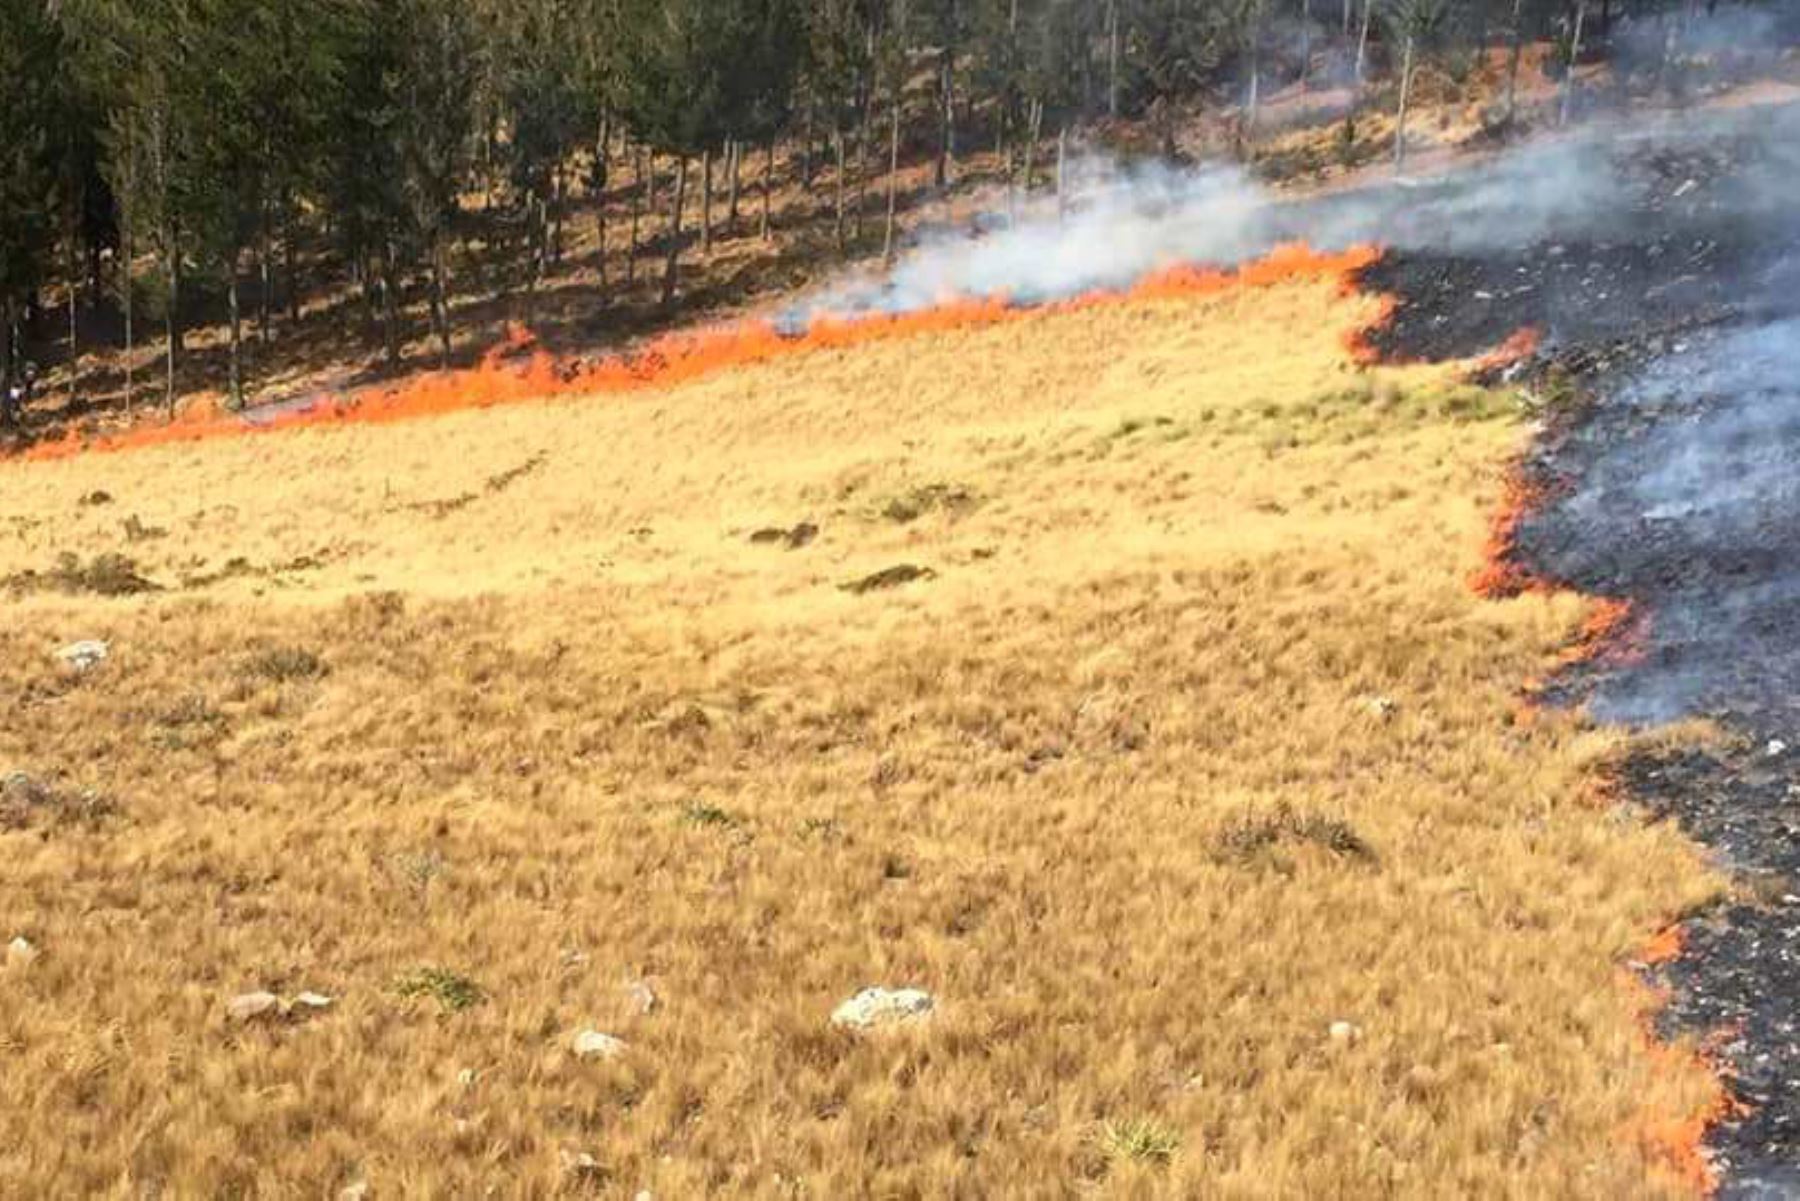 Incendio forestal en la región Cajamarca arrasó más de 150 hectáreas de pastizales y plantaciones de pino, informó el Serfor. Foto: ANDINA/Eduard Lozano